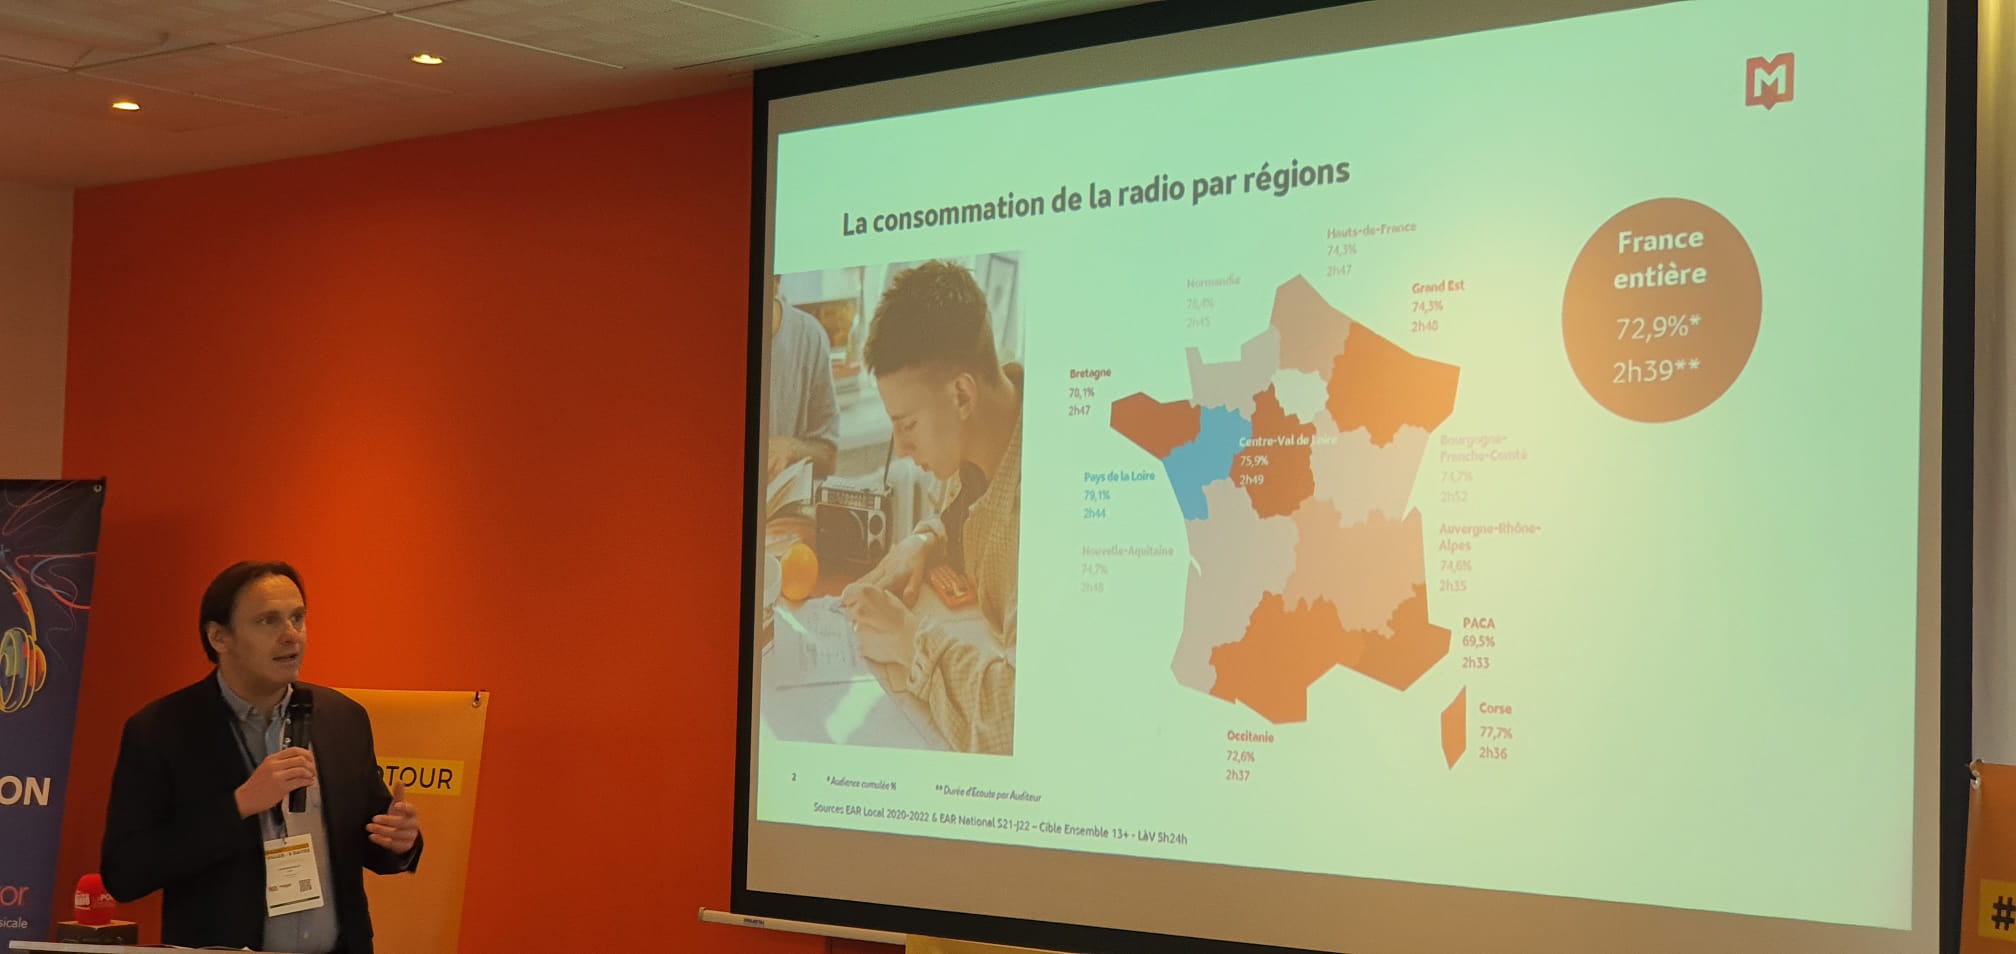 Comme à son habitude, Guy Detrousselle a présenté, ce matin à Nantes, des chiffres exclusifs concernant l'audience de la radio en Pays de la Loire